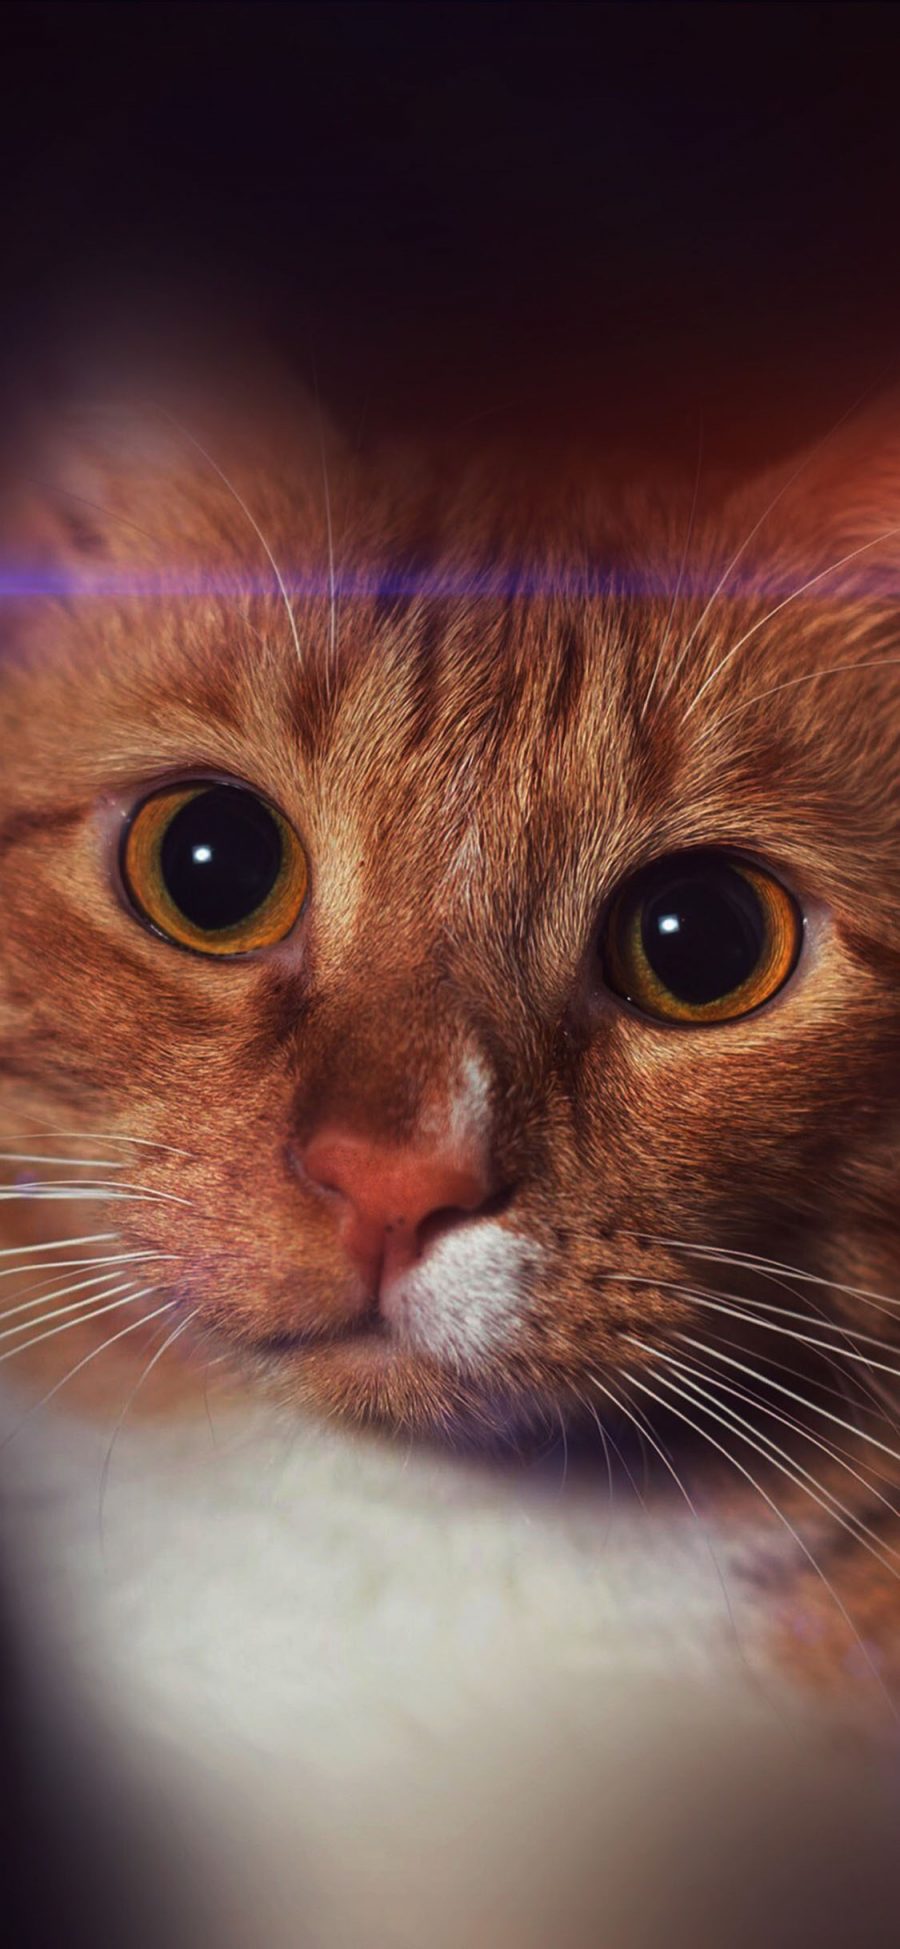 [2436×1125]喵星人 宠物猫 橘猫 大眼珠 苹果手机壁纸图片